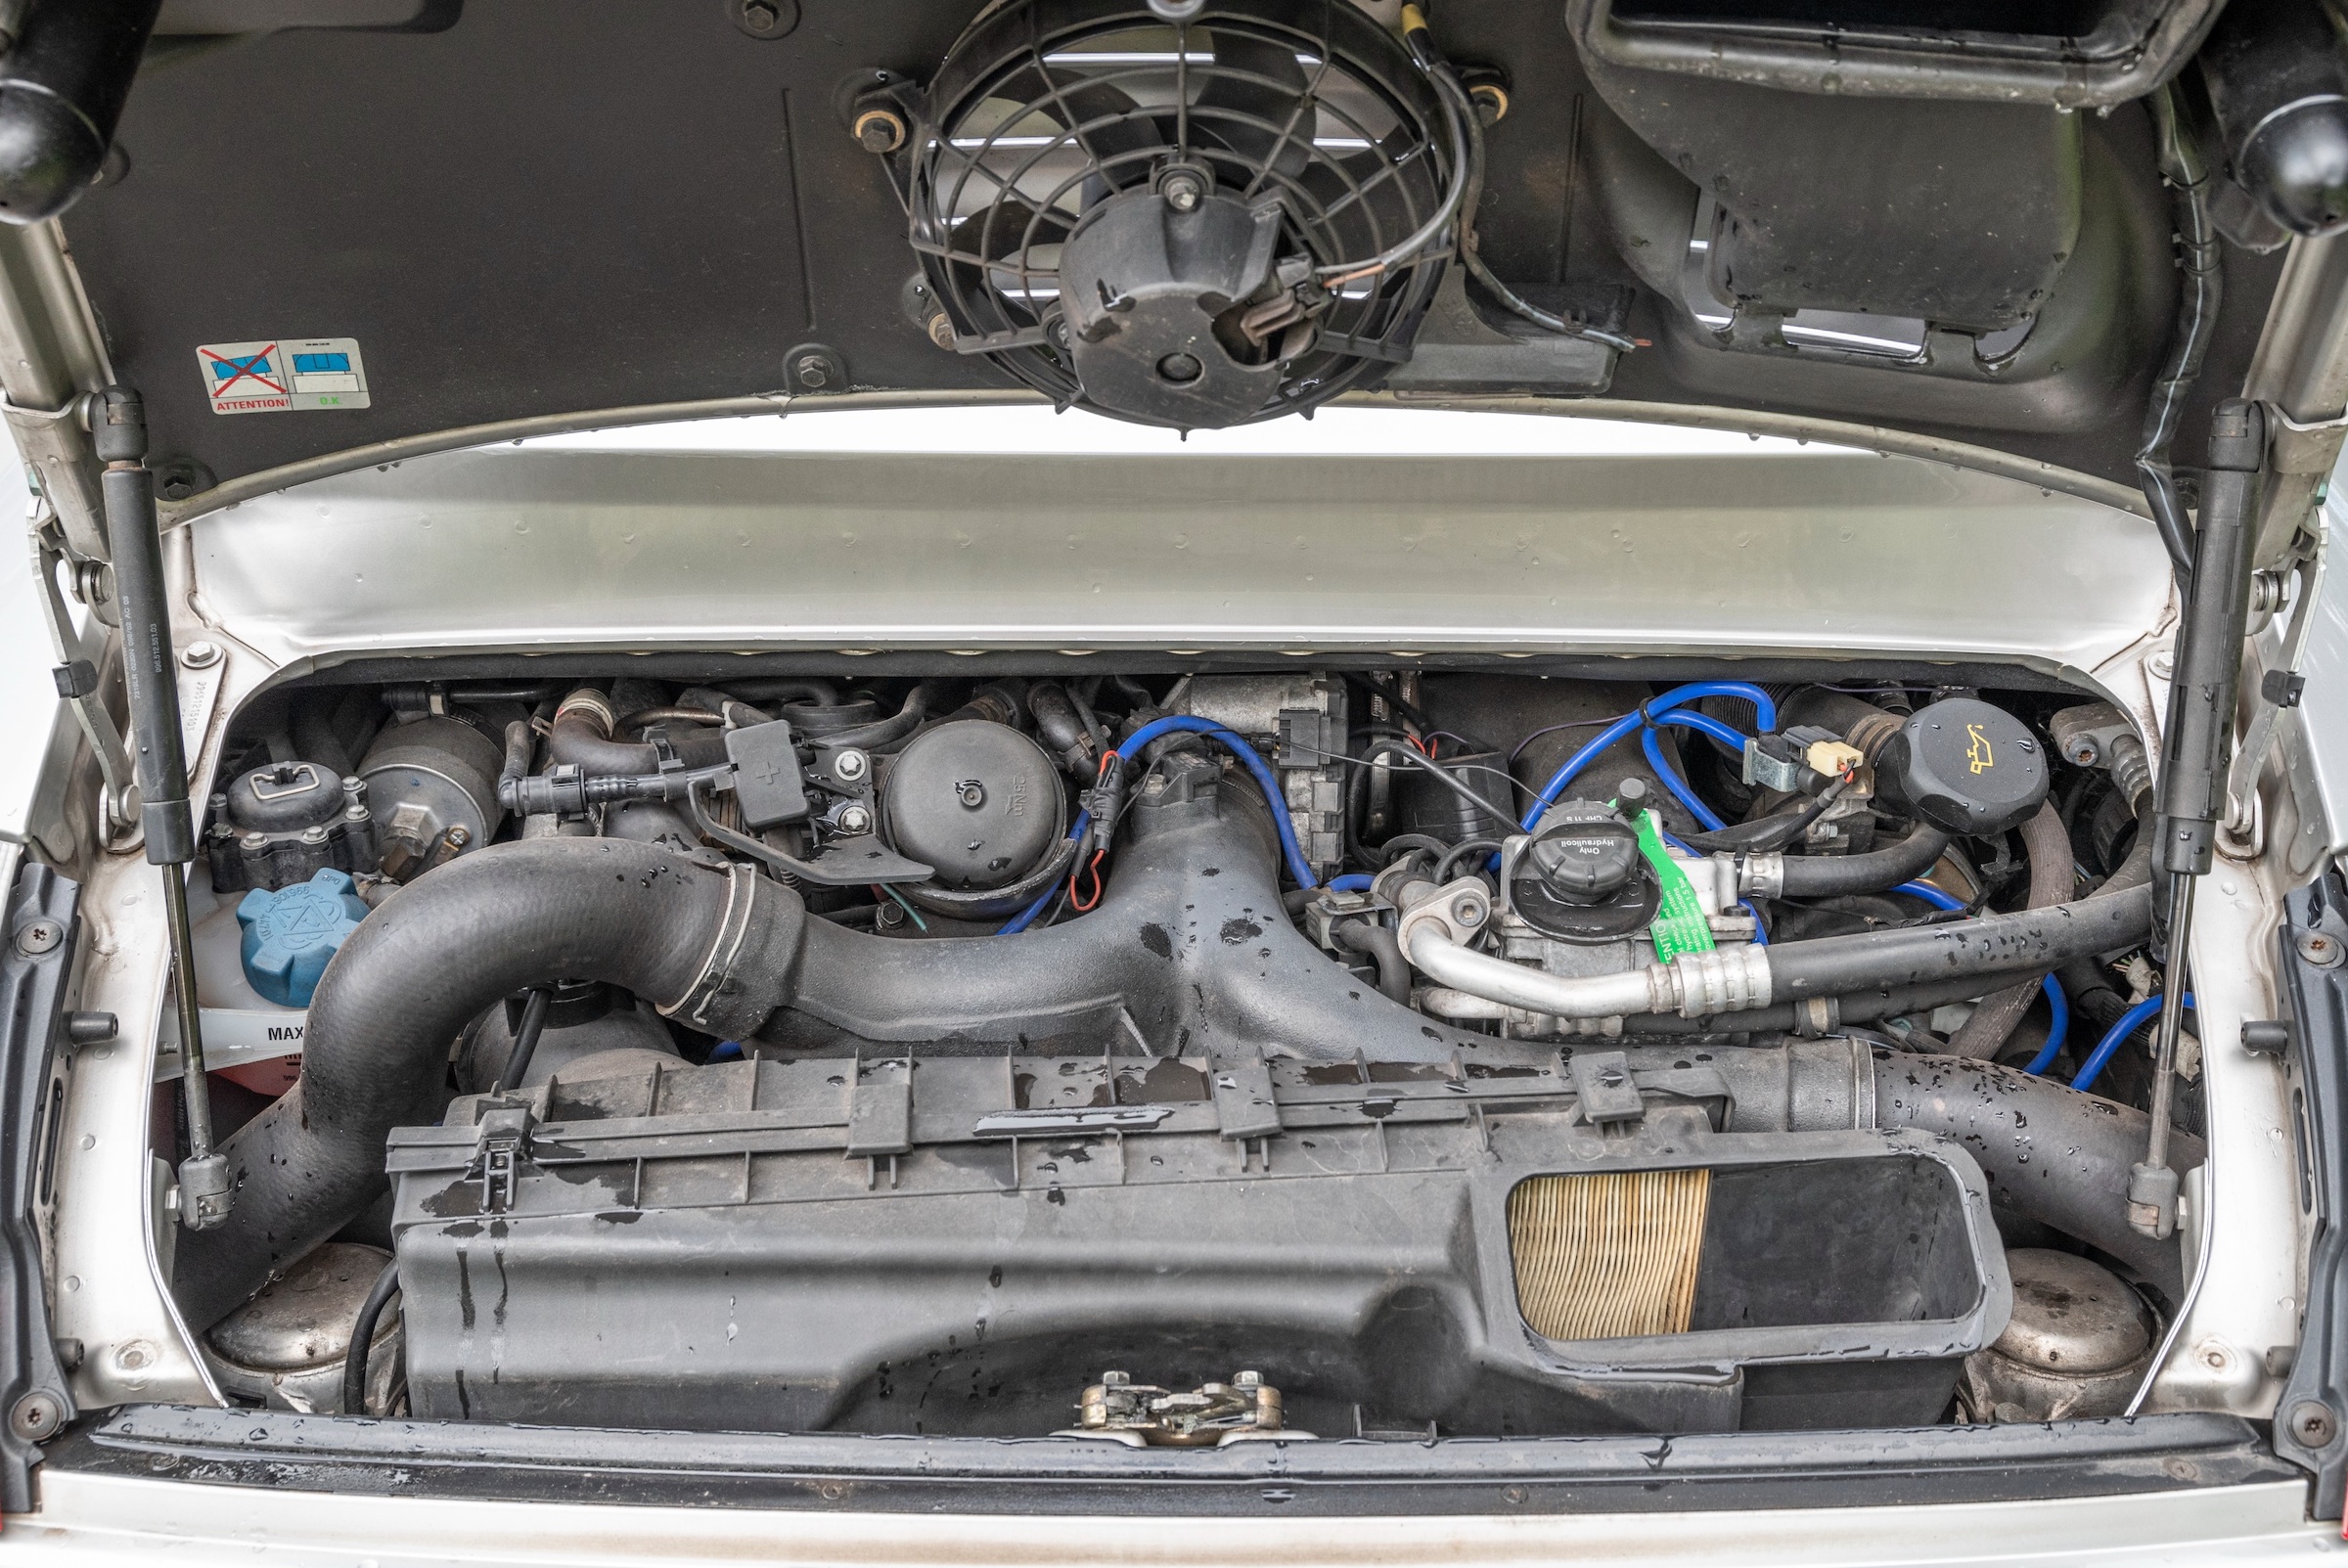 Porsche 996 Turbo engine